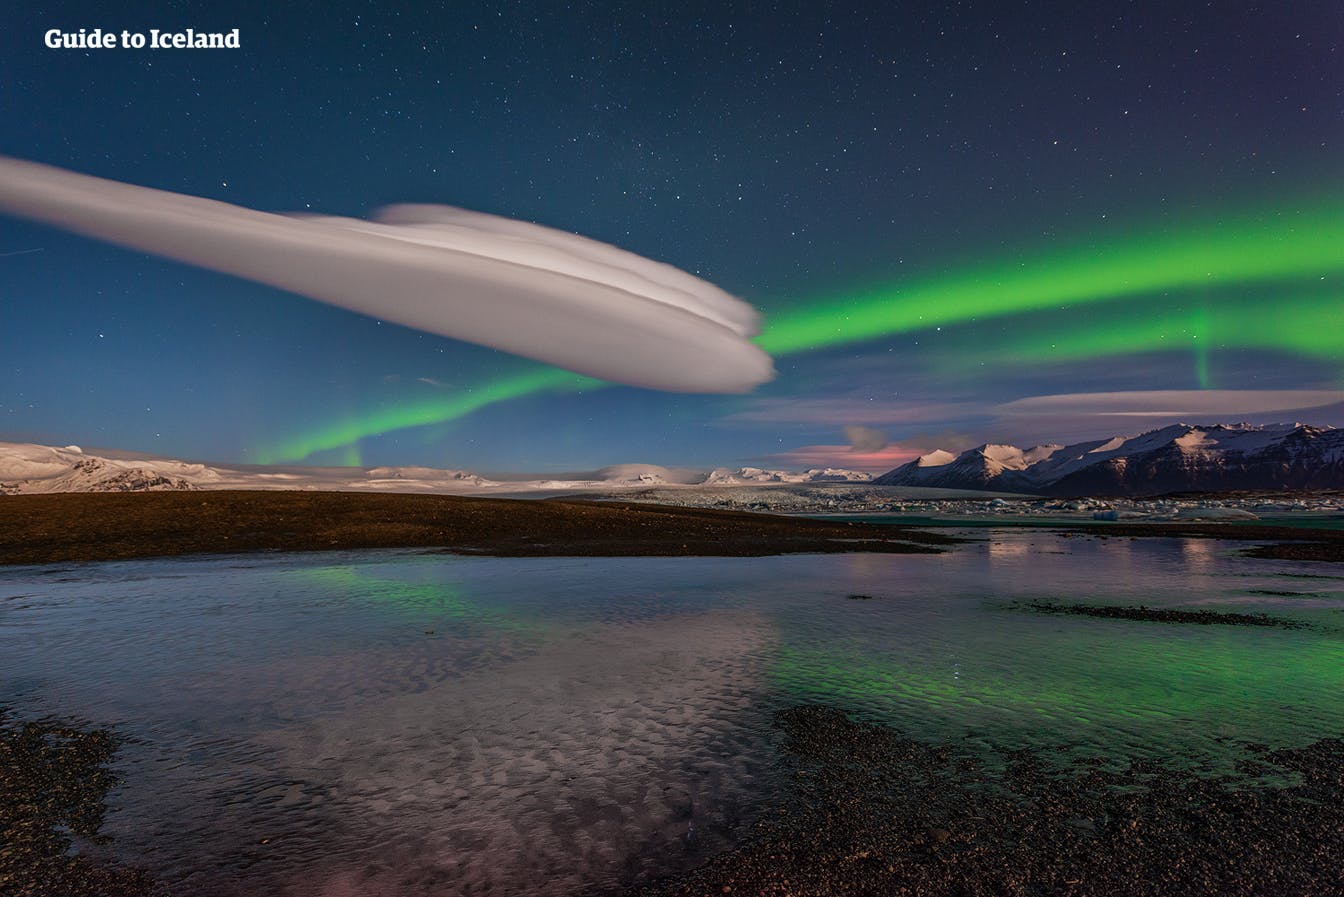 Las preciosas auroras boreales juega en el cielo que cubre la bella laguna glaciar de Jökulsárlón.